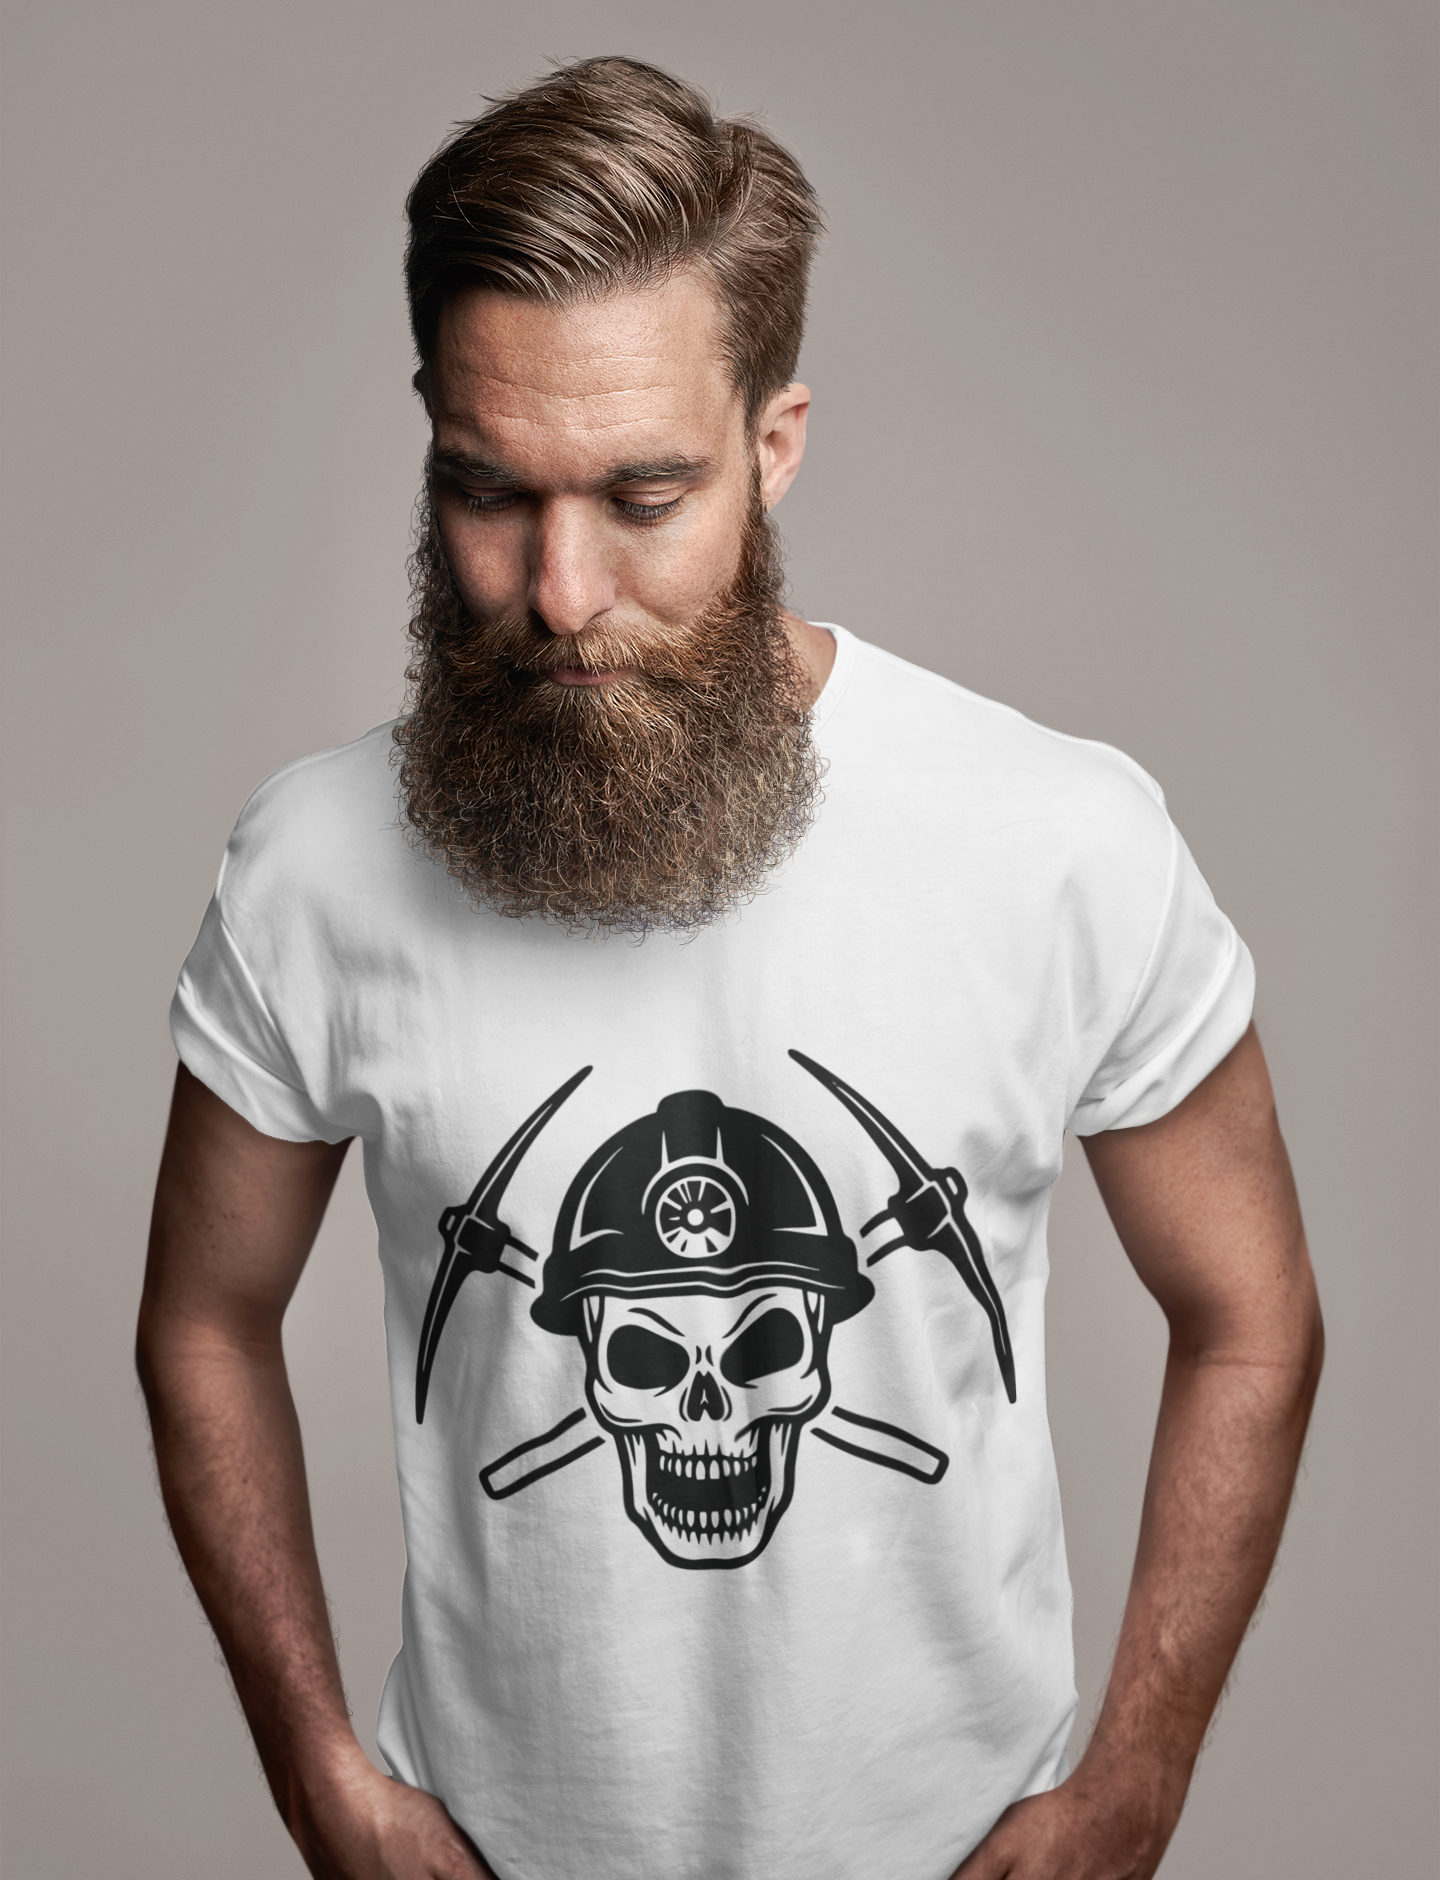 ULTRABASIC Herren-Grafik-T-Shirt – Miner-Schädel-Shirt – lustiges Neuheits-Shirt